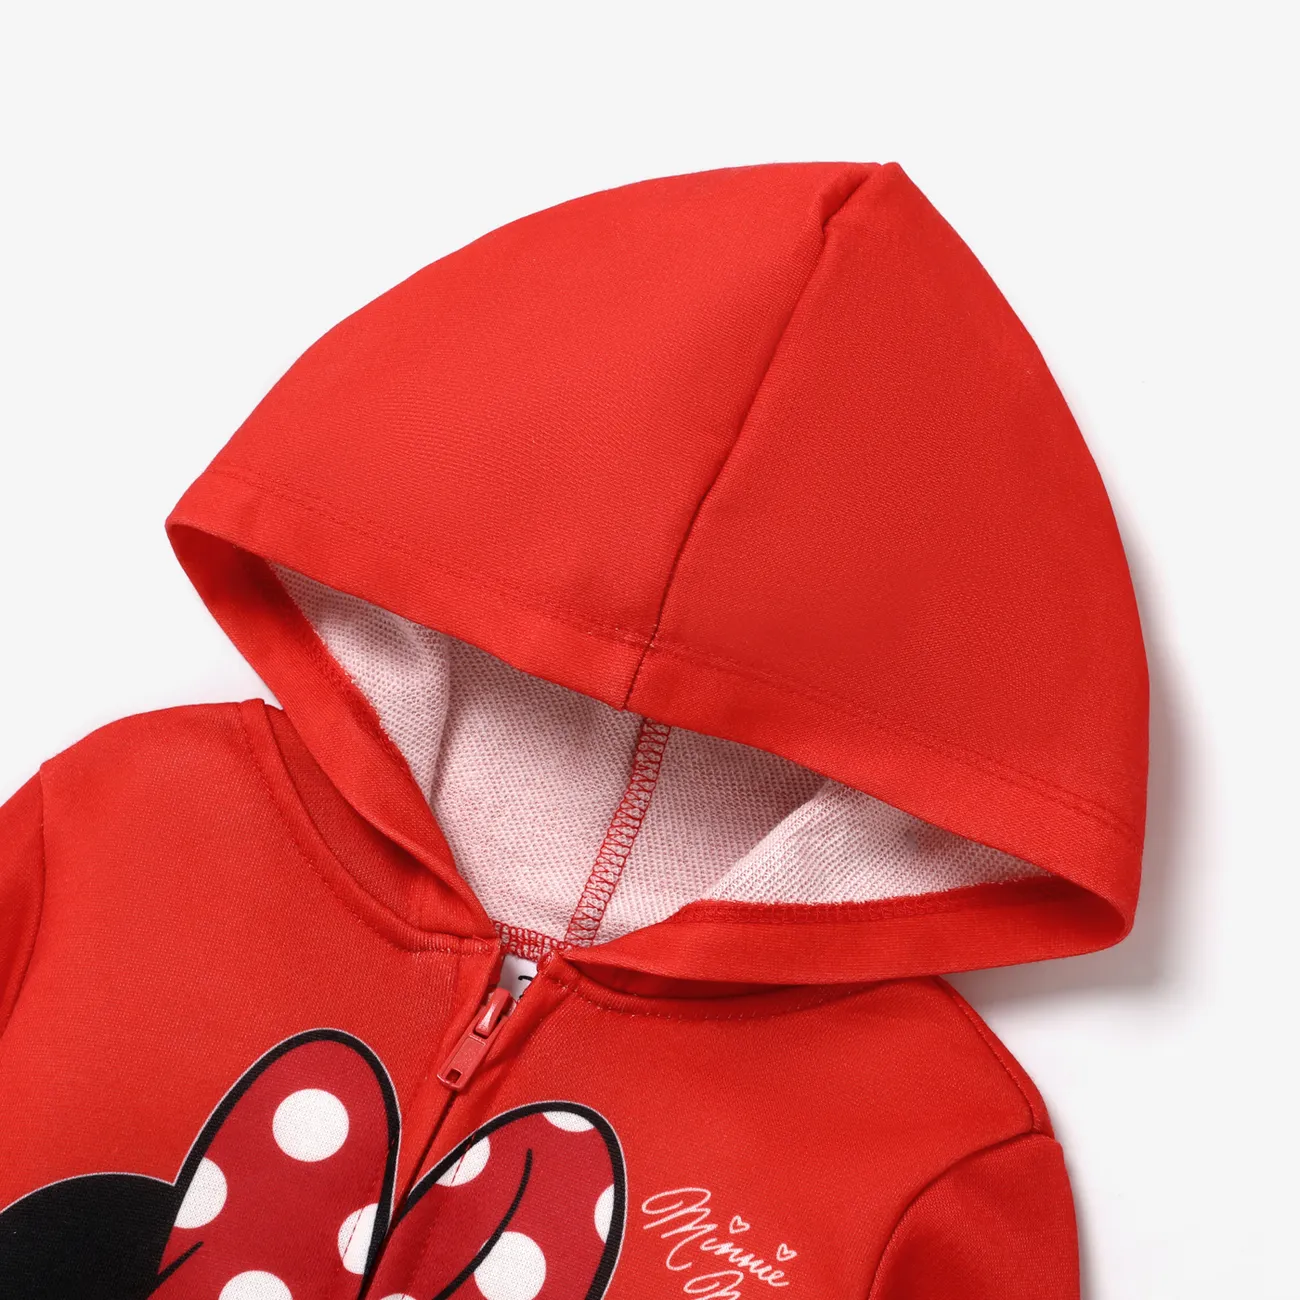 Disney Mickey and Friends 2 unidades Niño pequeño Chica Cremallera Infantil conjuntos de chaqueta rojo 2 big image 1